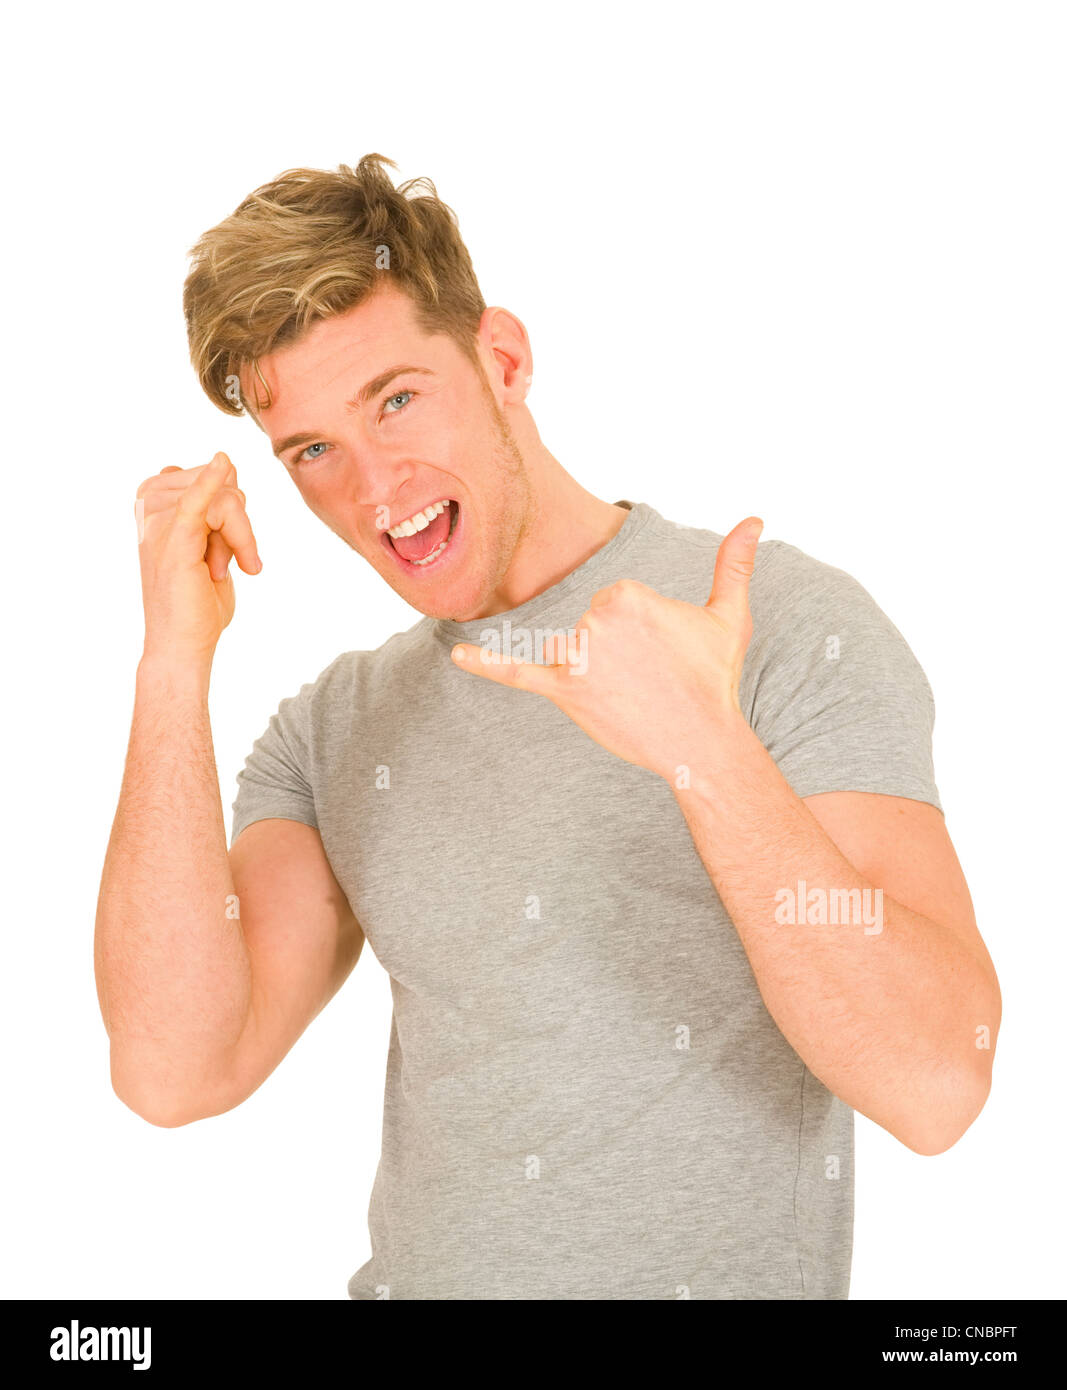 Young man making hang loose hand signals Stock Photo